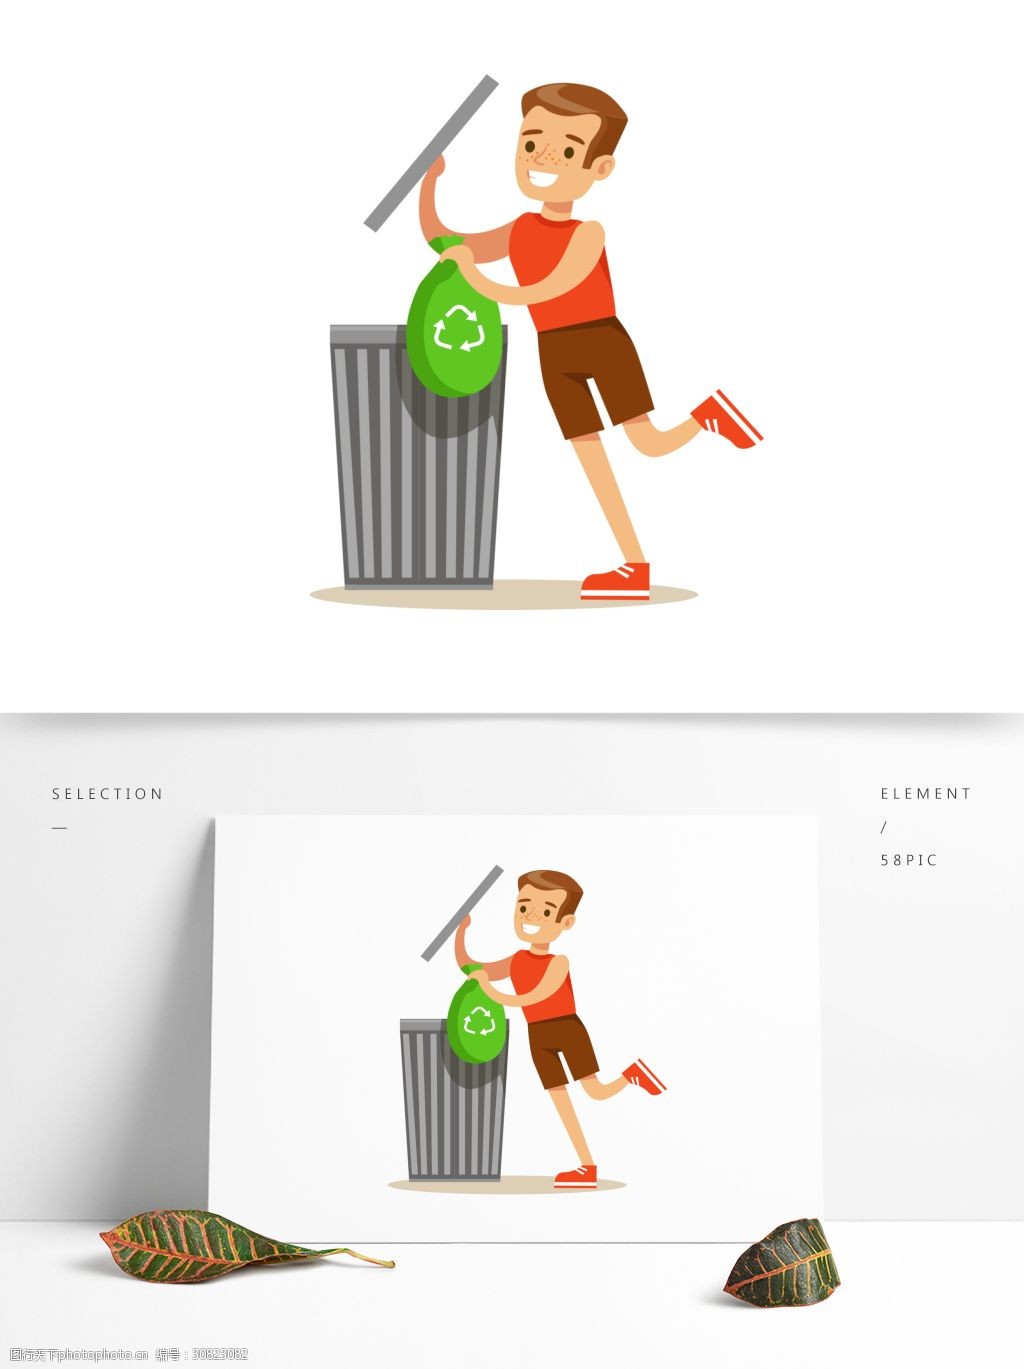 卡通 简约 扁平化 人物 小孩 扔垃圾 垃圾桶 插画设计